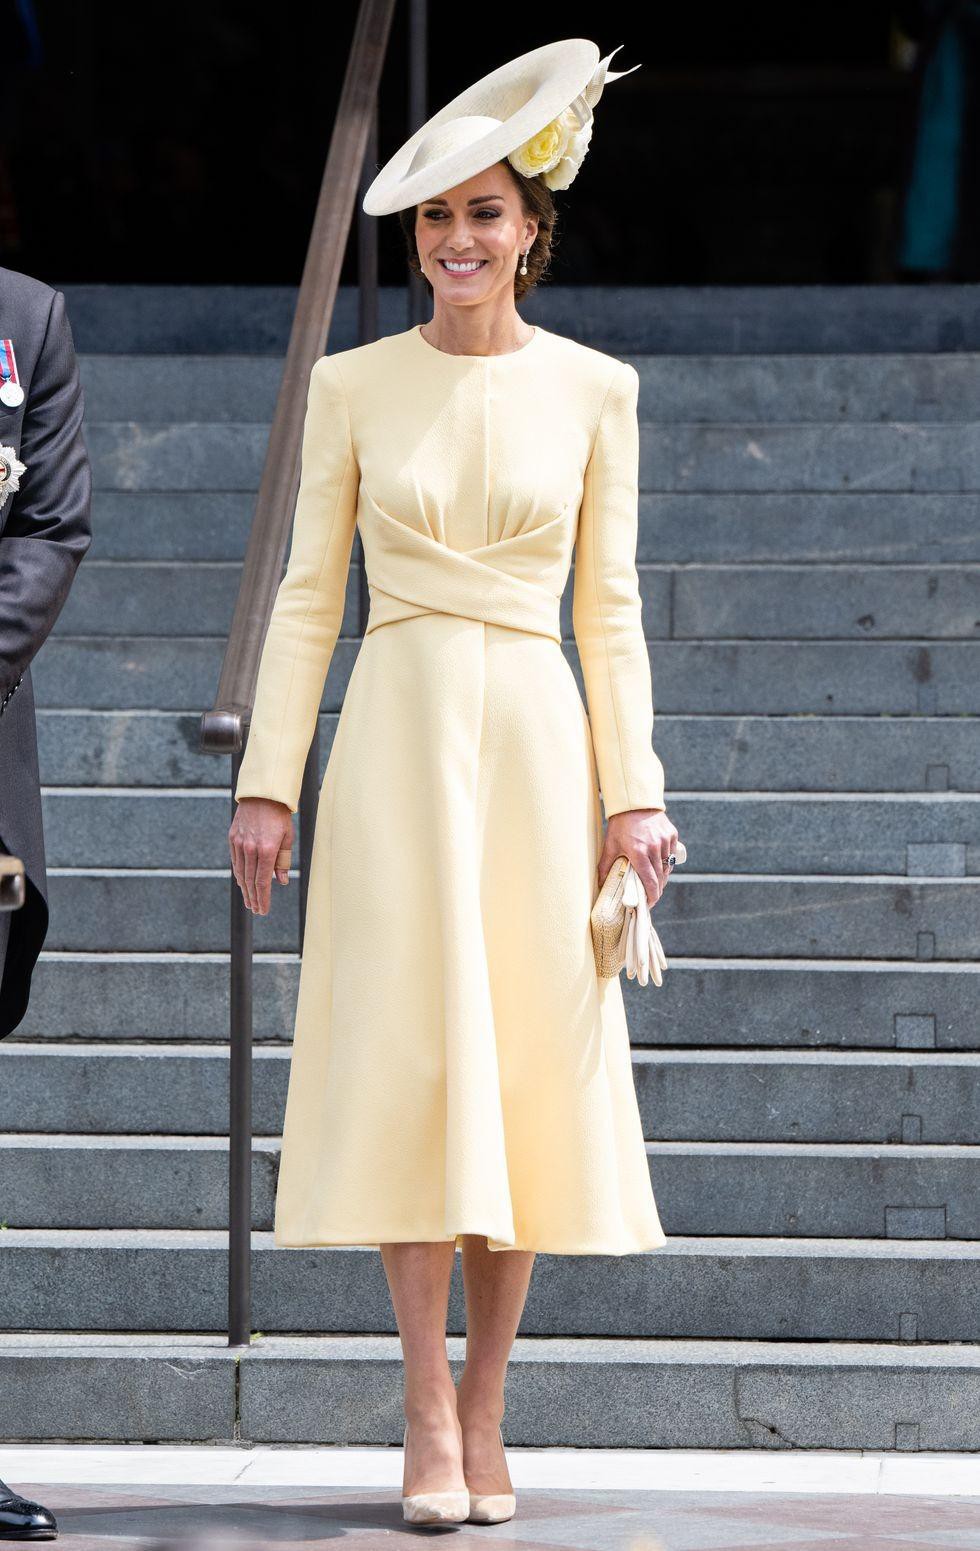 Ngắm những trang phục đẹp thanh lịch của 'Biểu tượng thời trang Hoàng gia' - Công nương Kate - Ảnh 4.